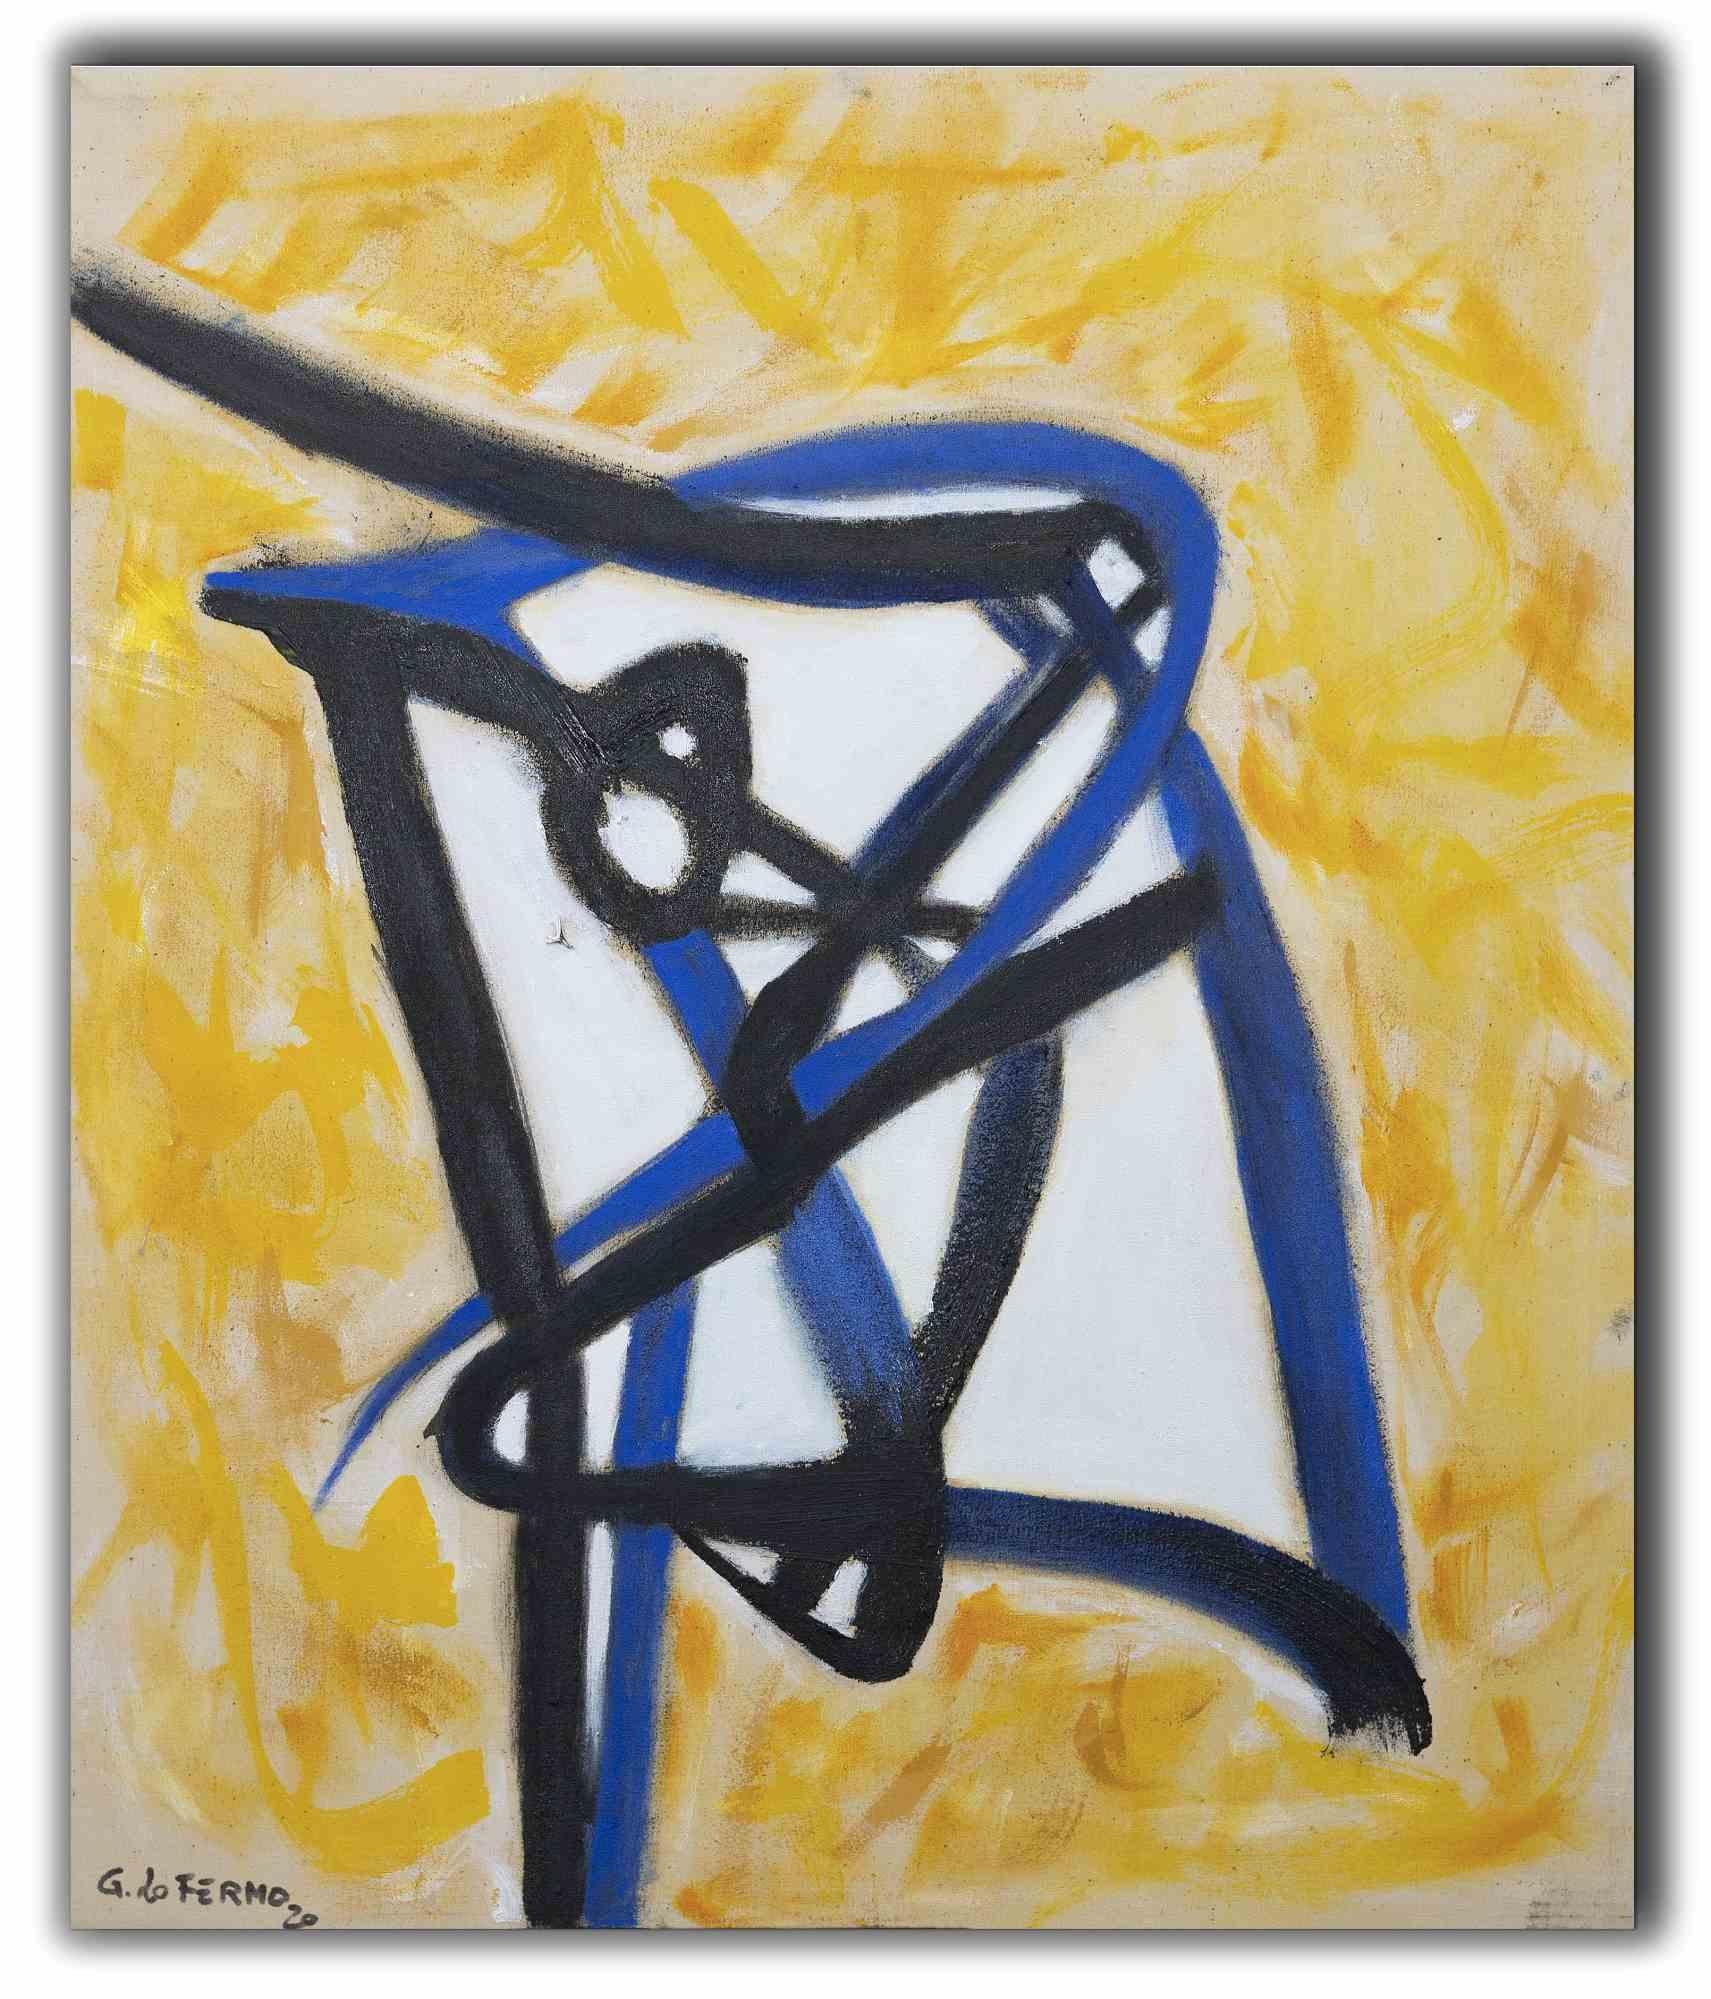 Abstract Expression ist ein Original-Kunstwerk von Giorgio Lo Fermo (geb. 1947) aus dem Jahr 2021.

Original Ölgemälde auf Leinwand.

Handsigniert, betitelt und datiert auf der Rückseite der Leinwand.

Handsigniert und datiert in der linken unteren